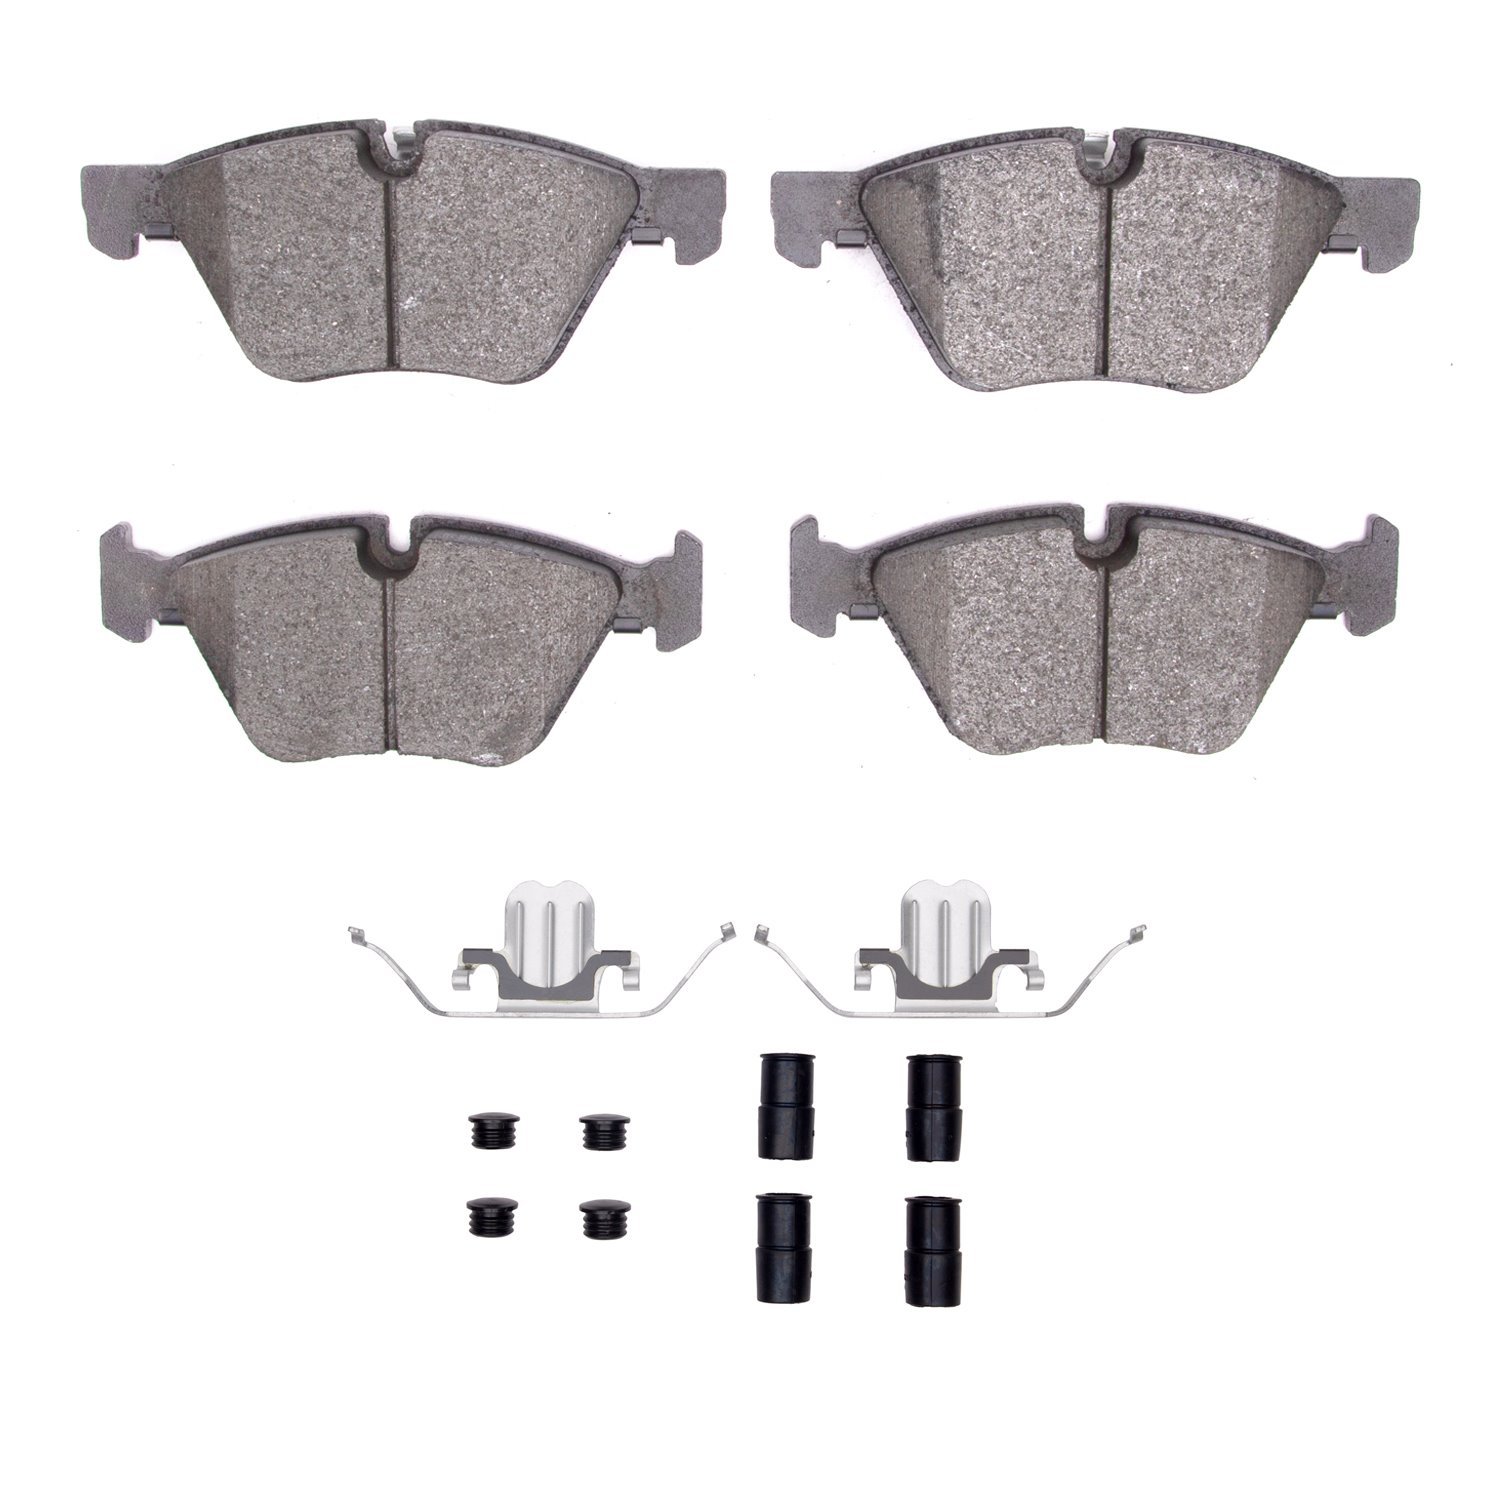 1311-1061-11 3000-Series Semi-Metallic Brake Pads & Hardware Kit, 2007-2013 BMW, Position: Front